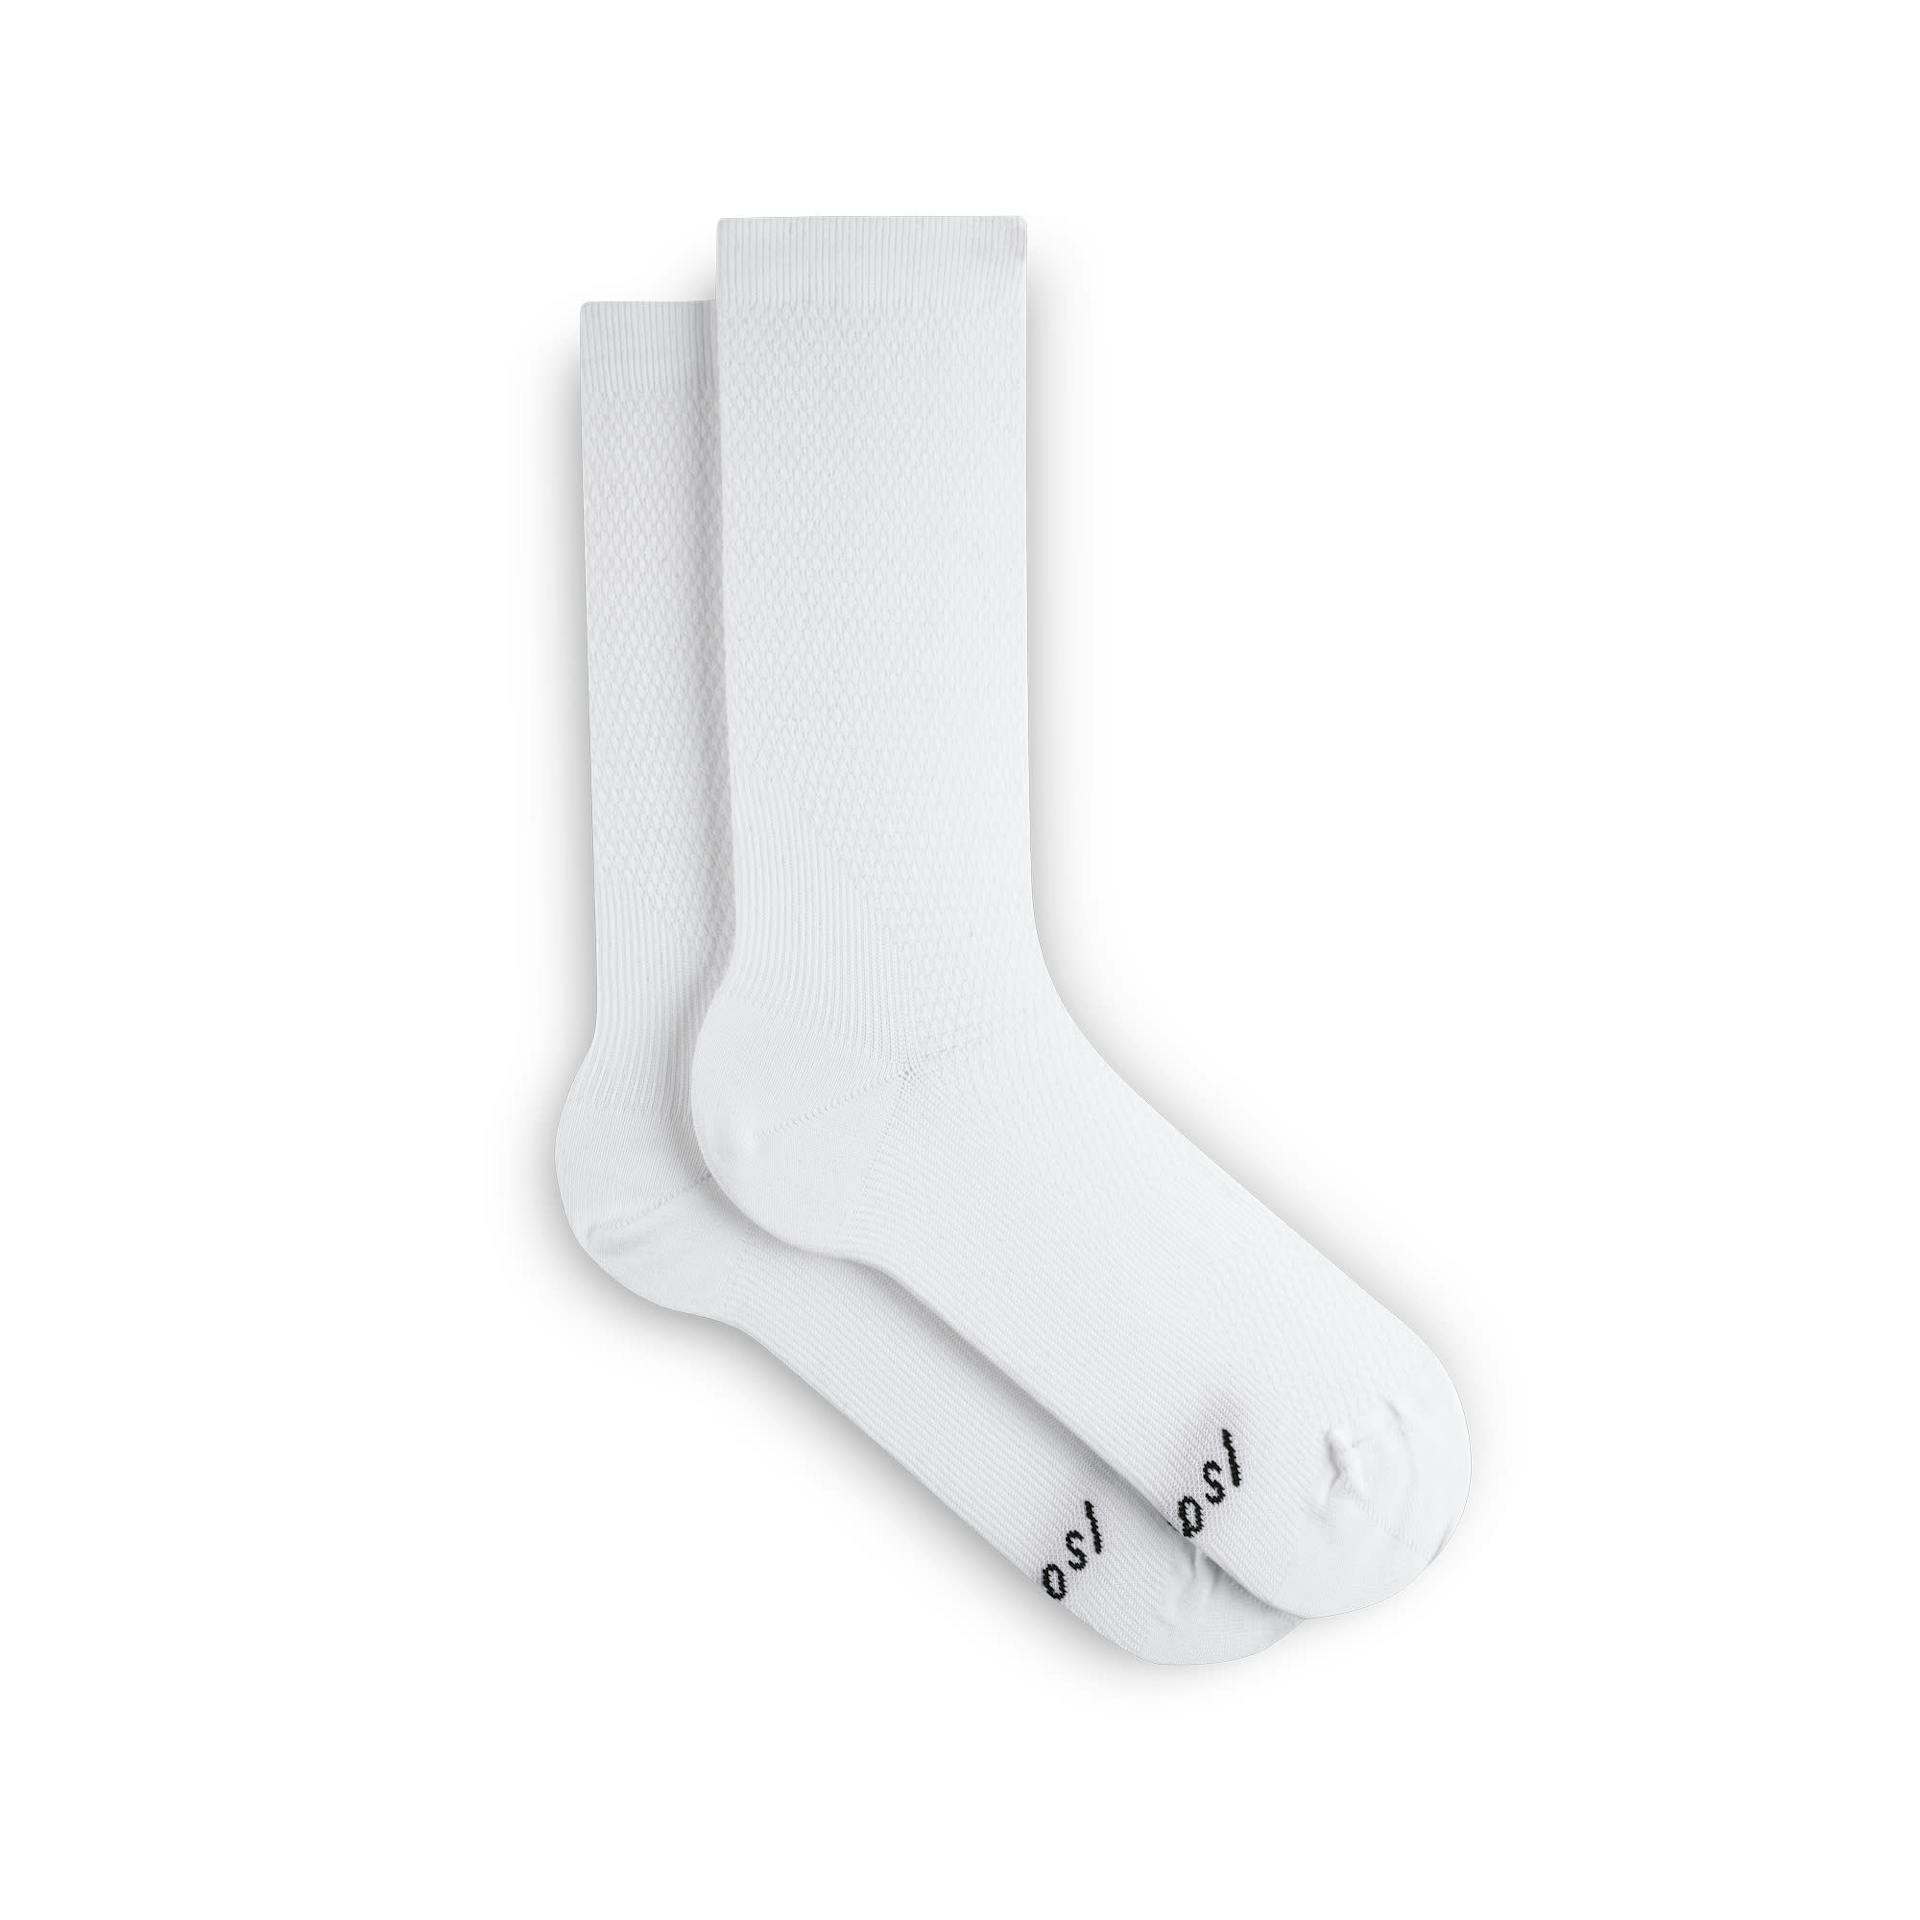 Echelon Socks - White
                        